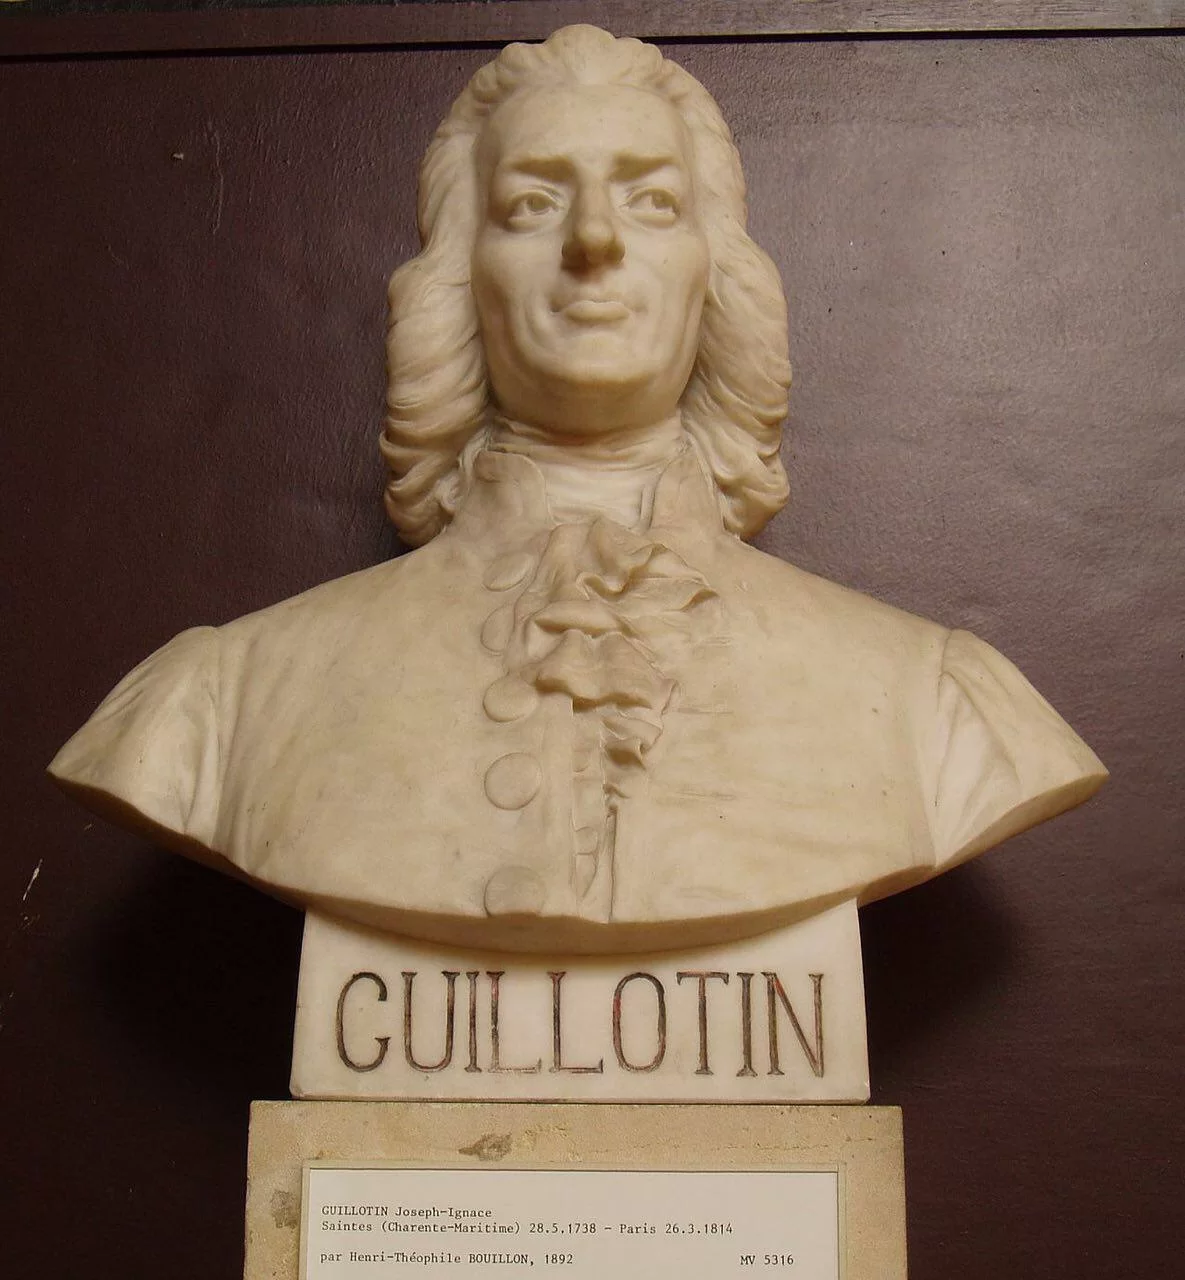 Жозе́ф Игна́с Гильоте́н не изобретал гильотины и не был казнен с помощью нее.